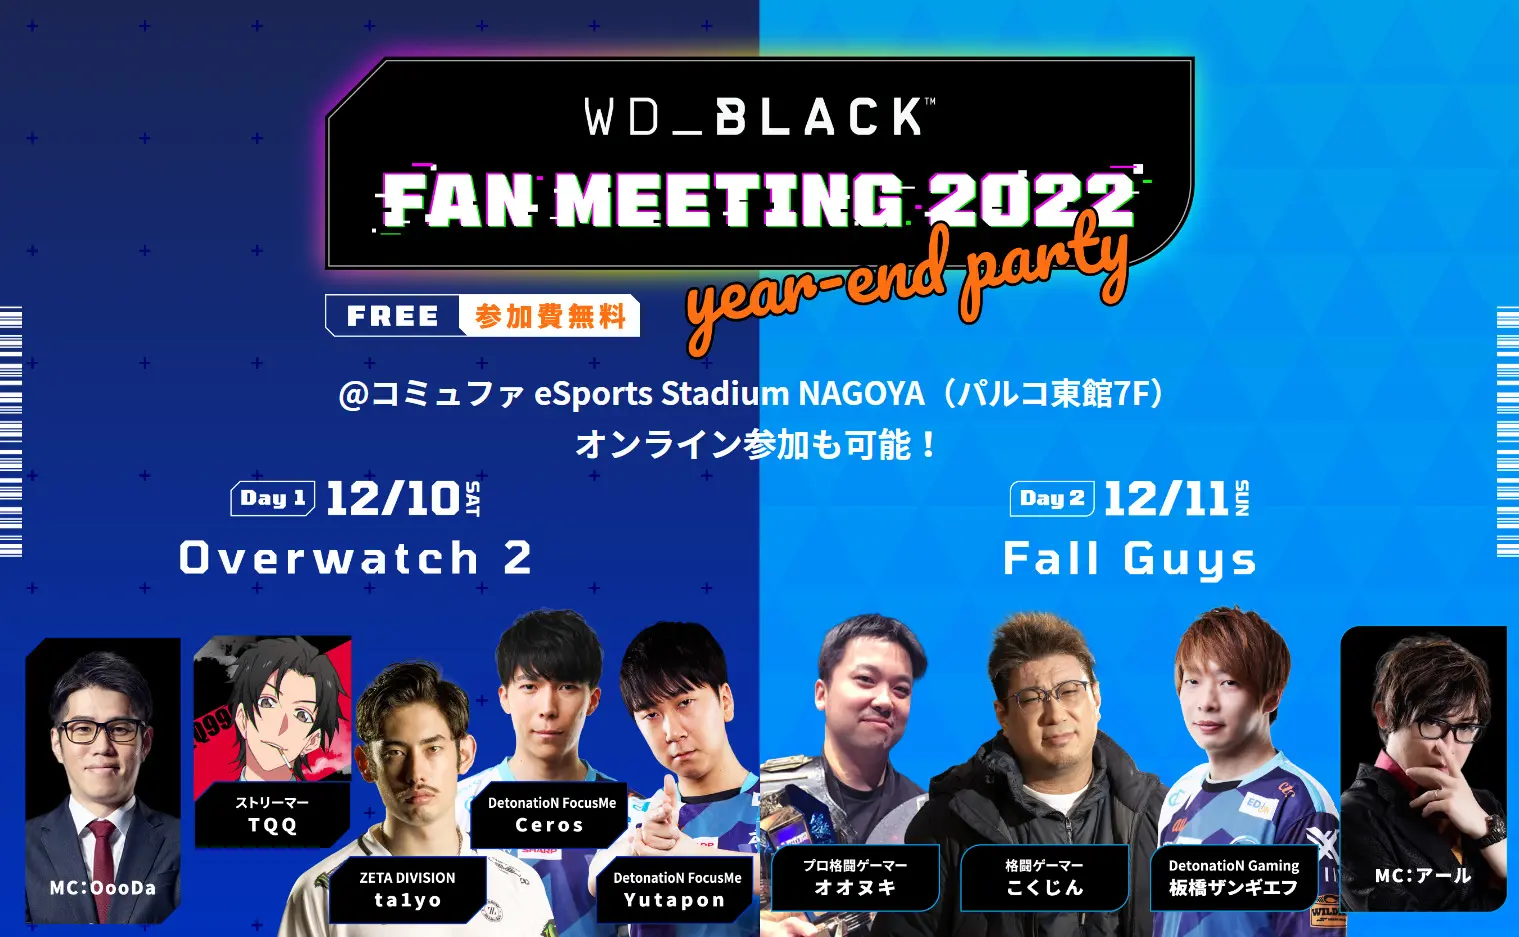 出演情報 – ta1yoが『WD_BLACK FAN MEETING 2022 year-end party』に出演